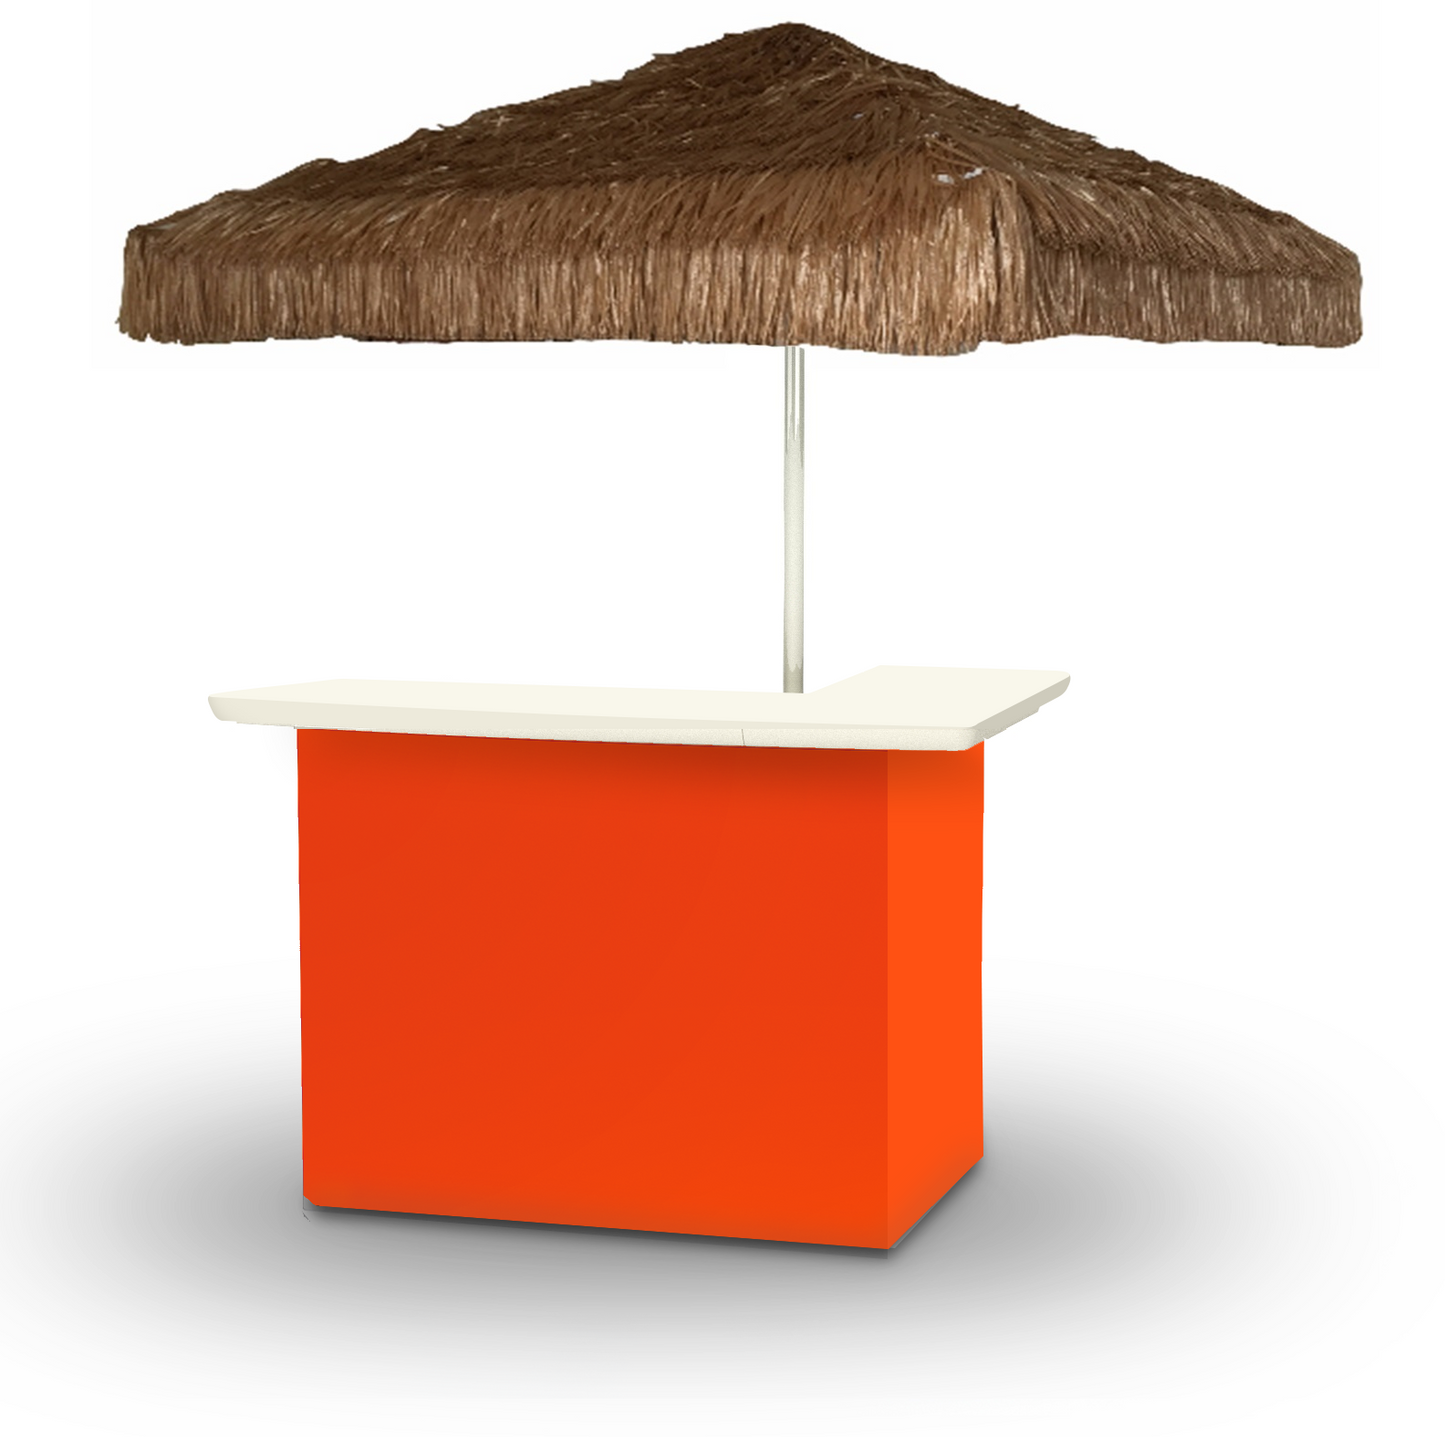 Solid Orange Portable Pop-Up Bar